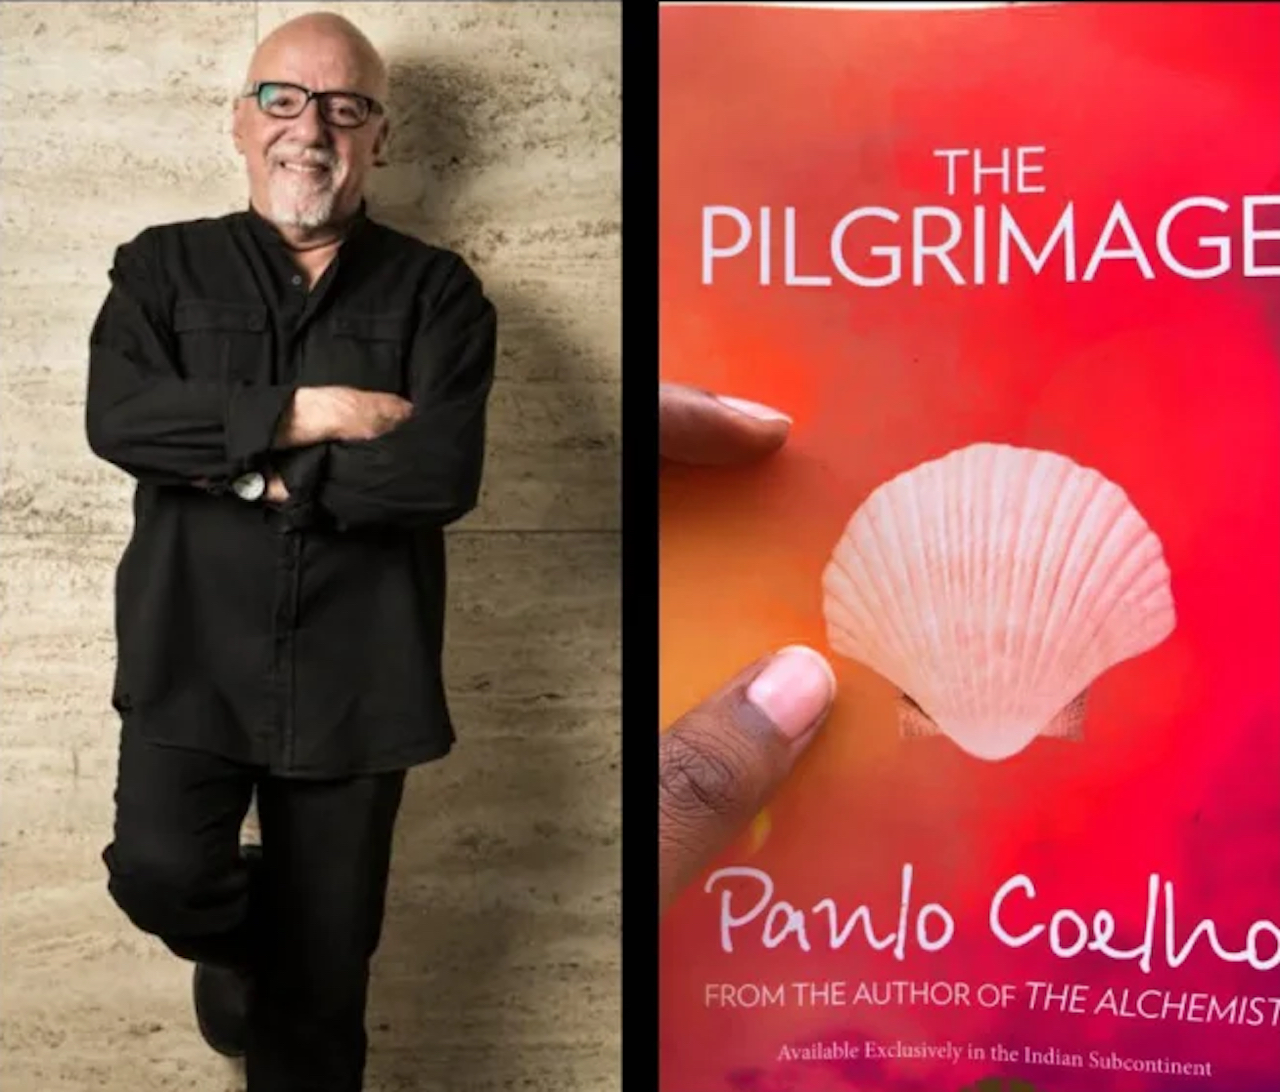 "La peregrinación" de Paulo Coelho